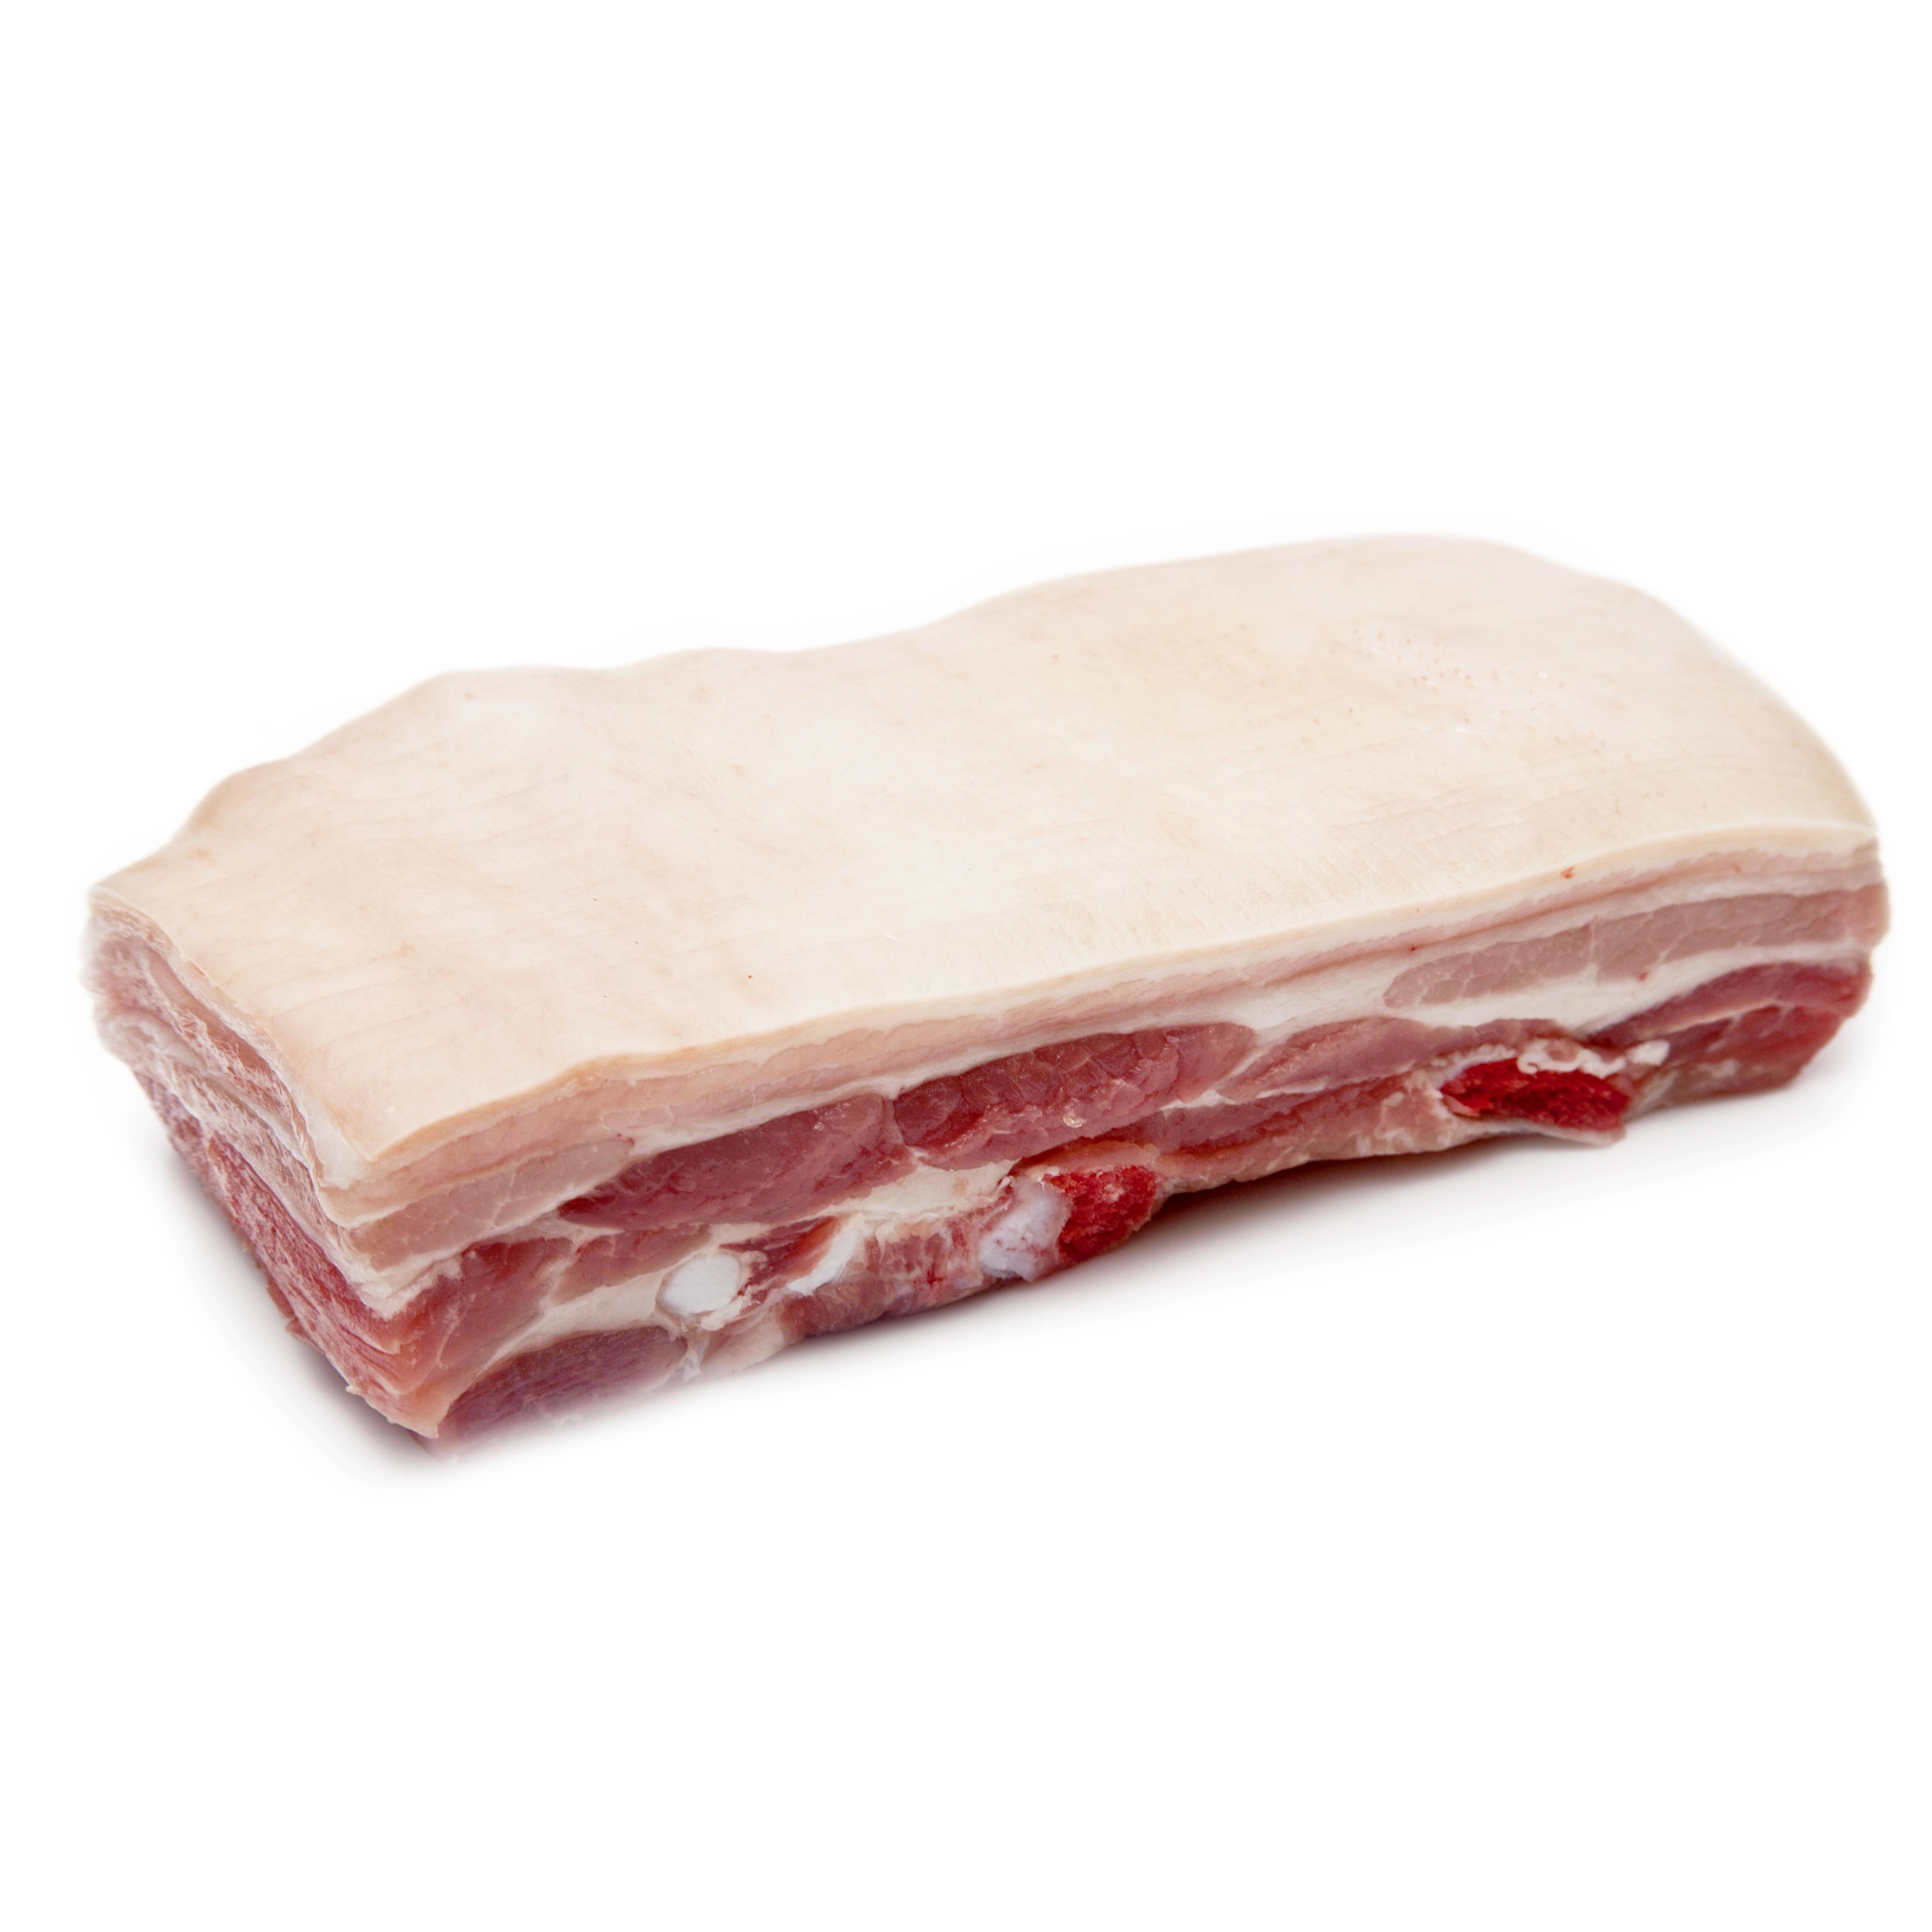 丹麥有機連皮豬腩肉